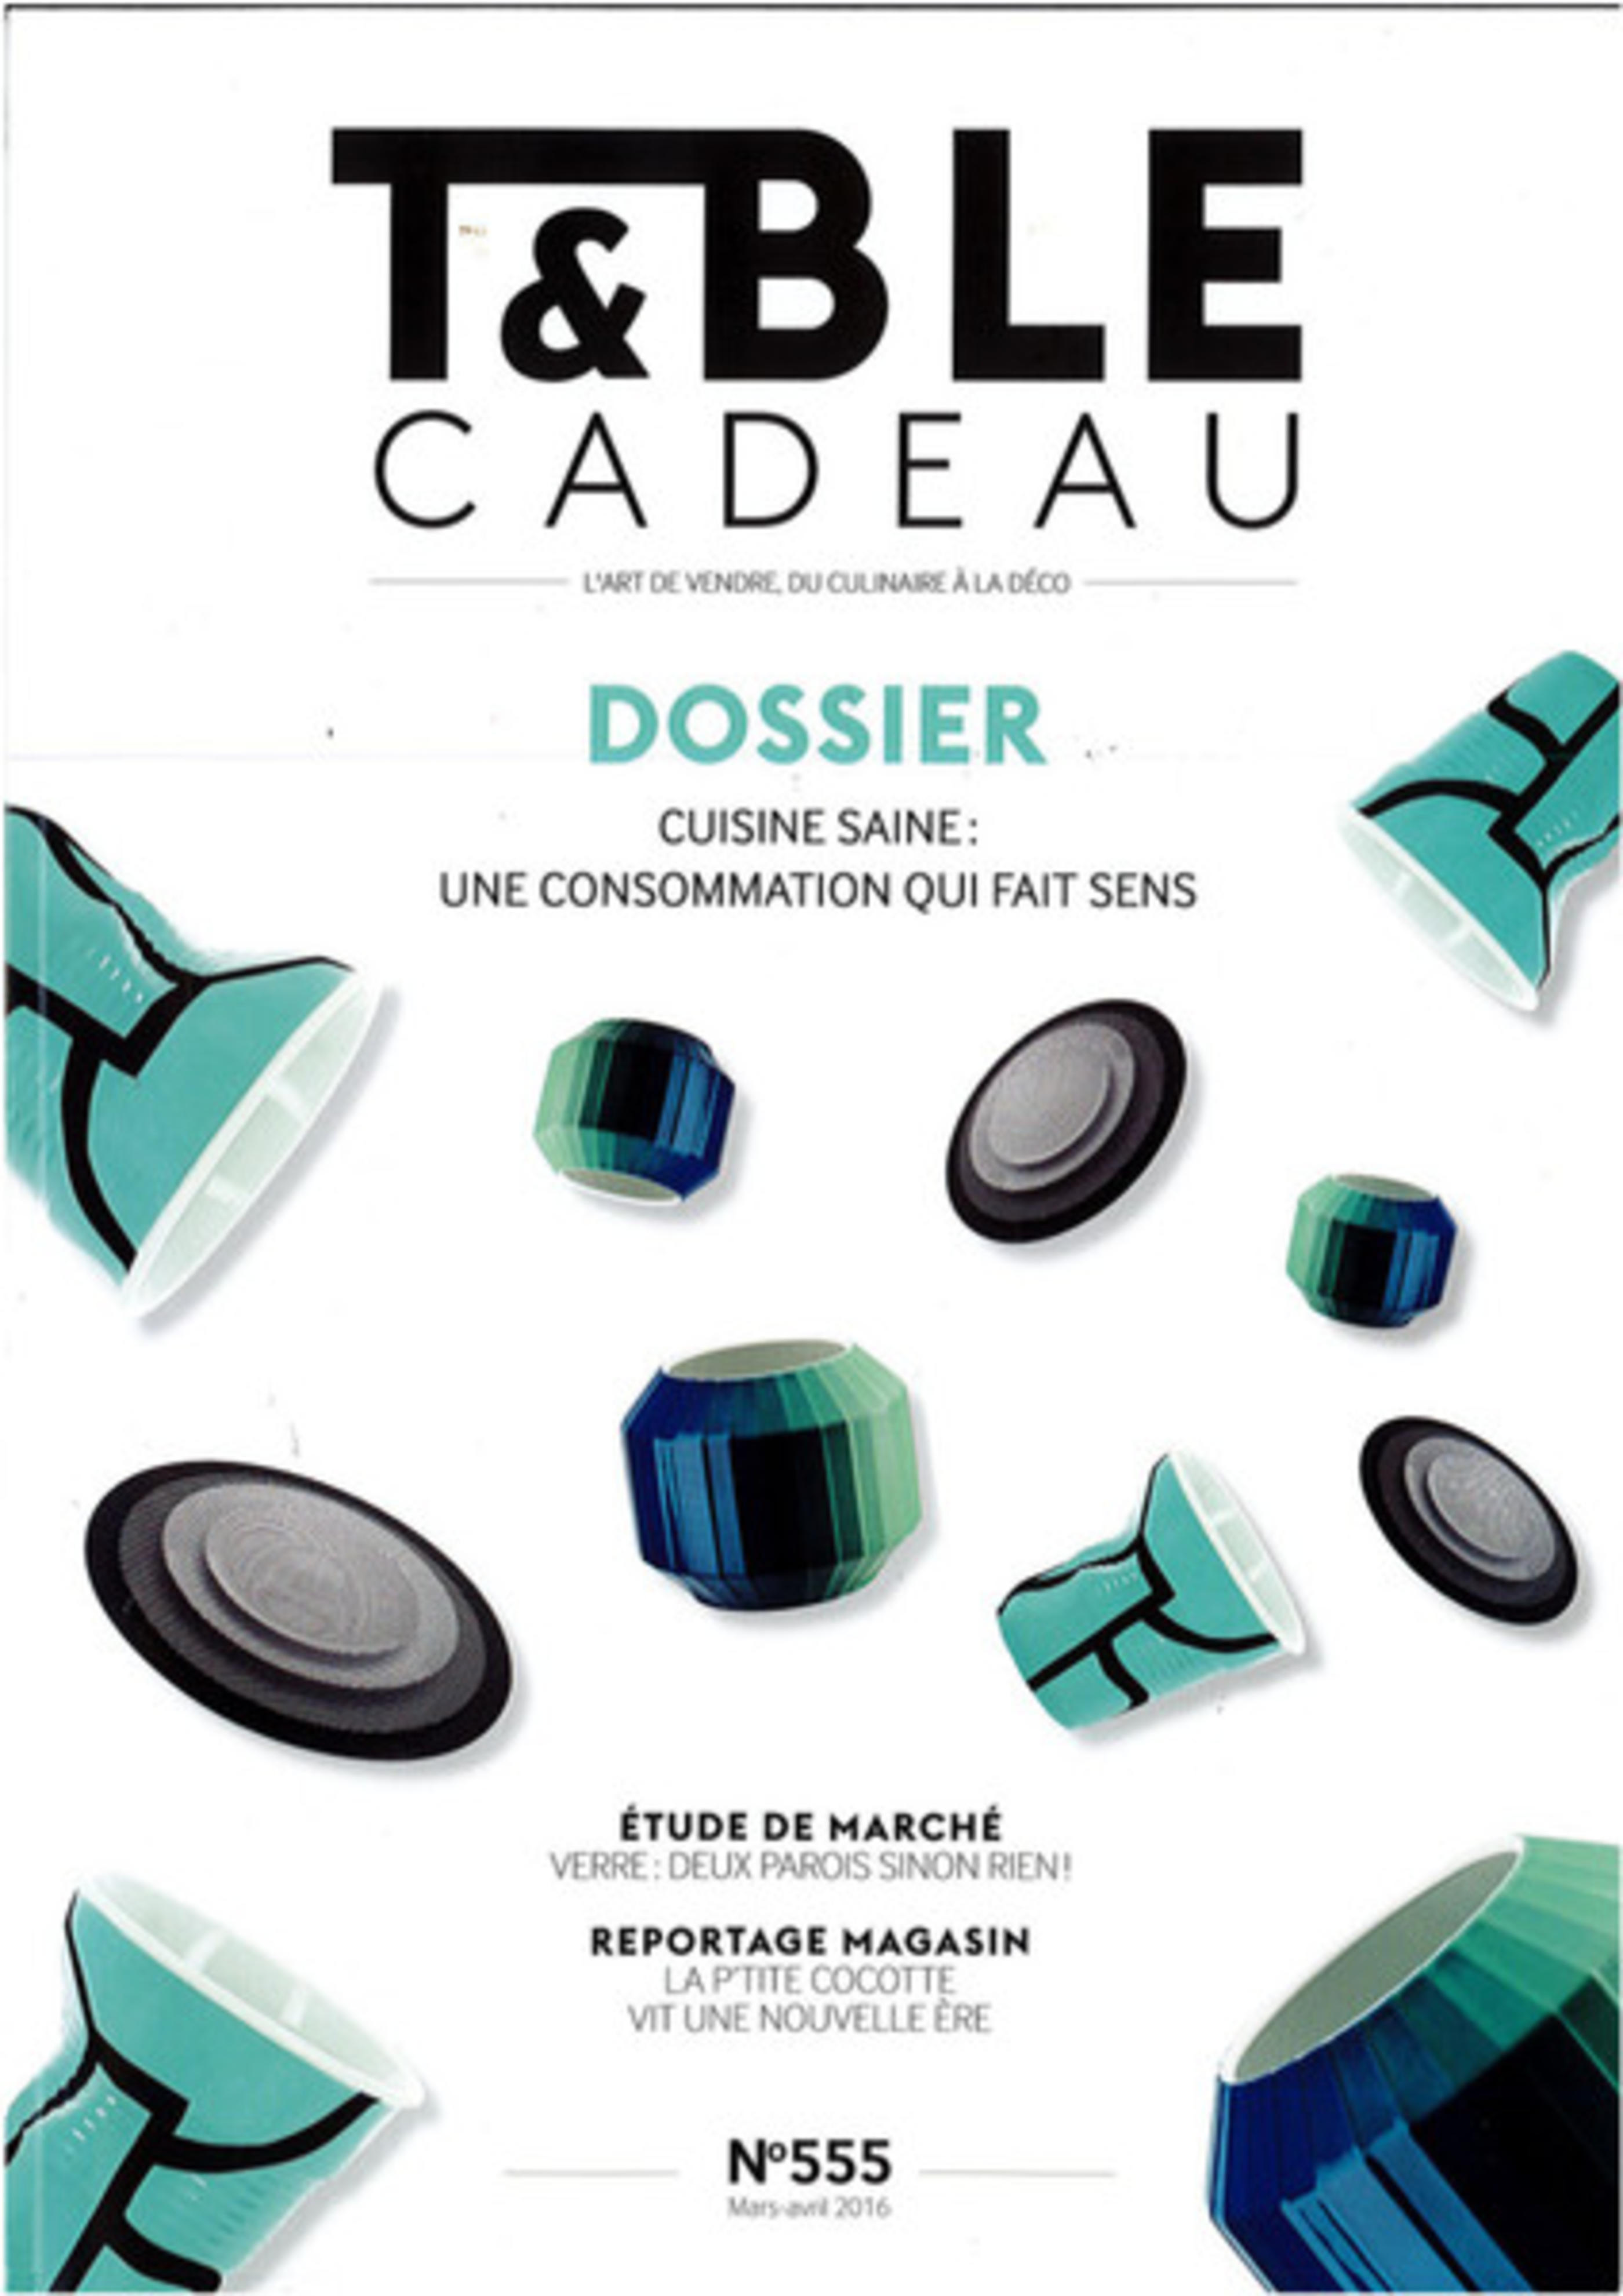 Jean Dubost coutelier professionnel, Table & Cadeau Mars Avril 2016